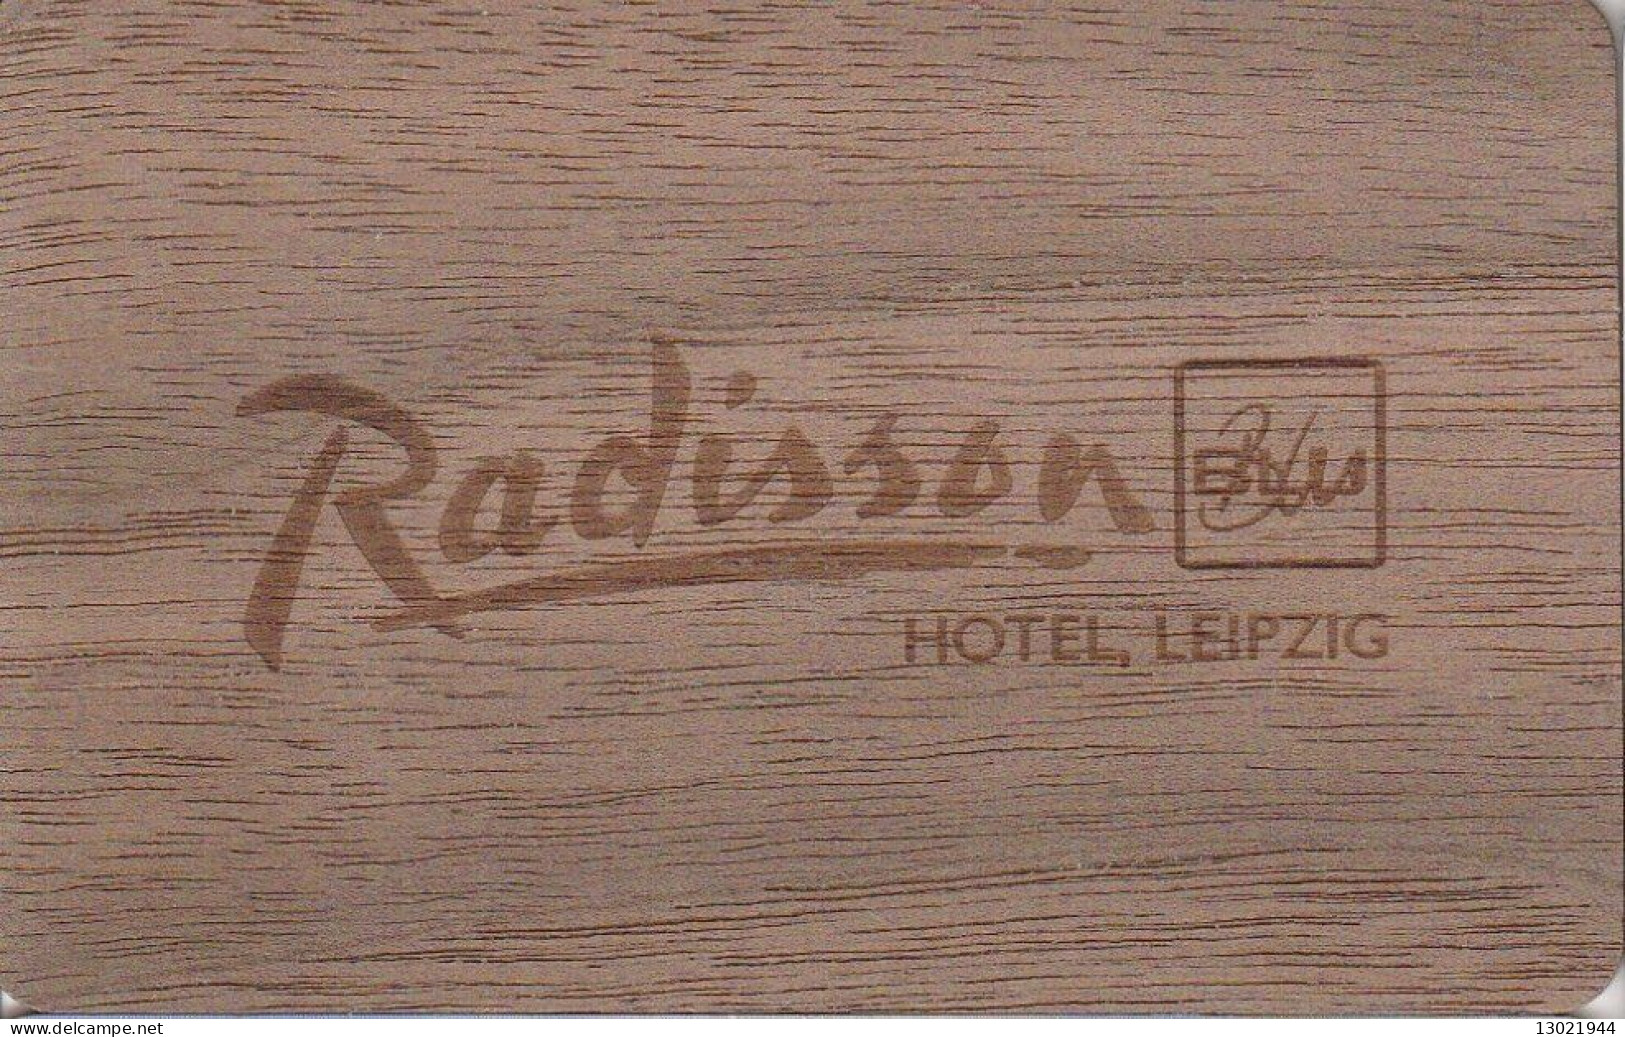 GERMANIA  KEY HOTEL  Radisson BLU Hotel Leipzig - WOODEN CARD - Hotel Keycards